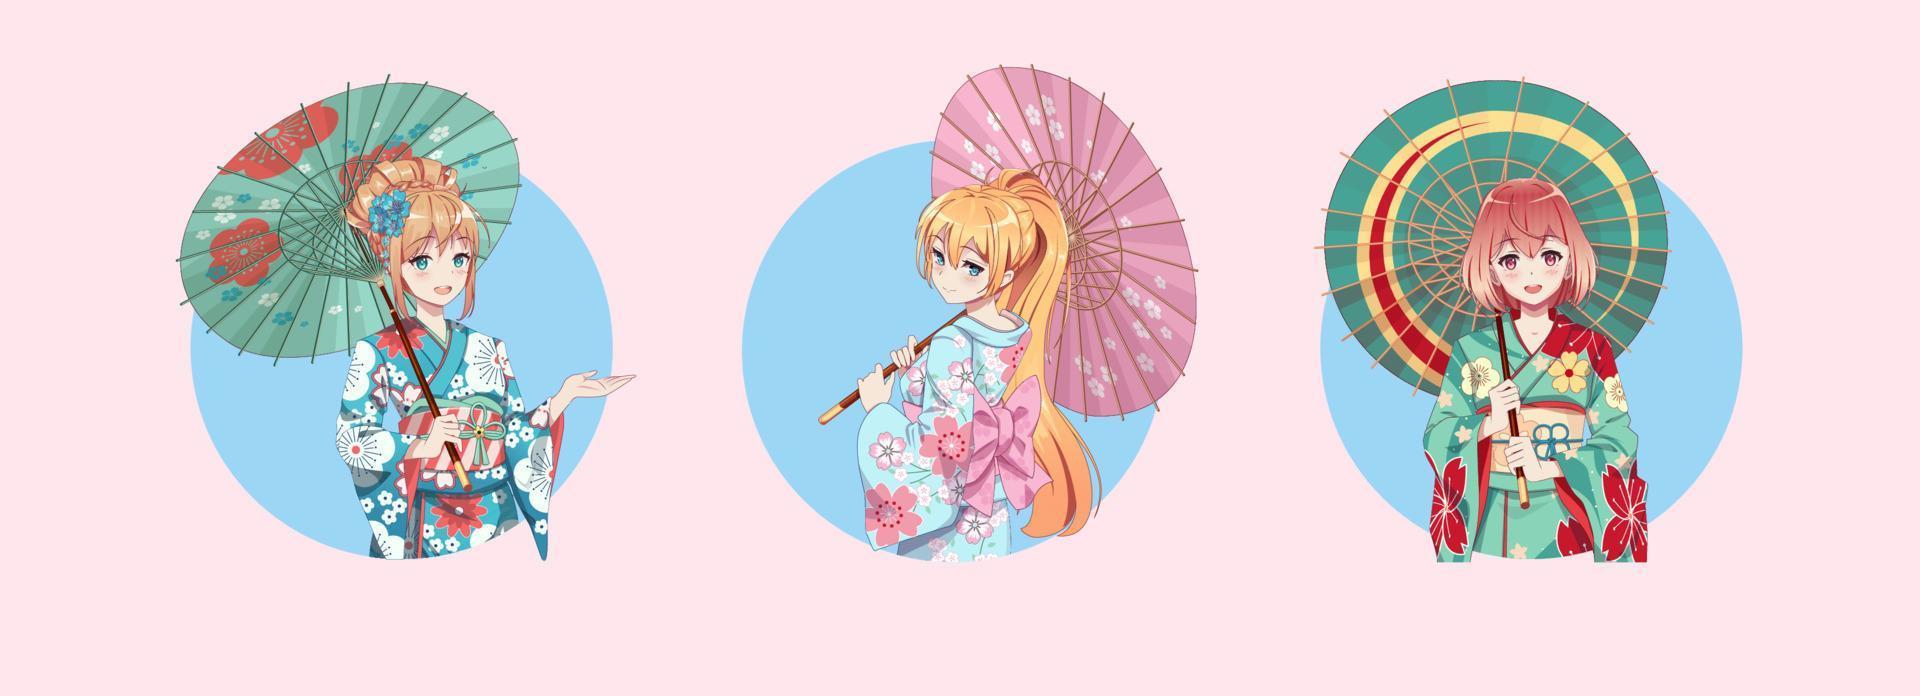 personagens de desenhos animados de garotas de mangá de anime. garota vestindo quimono japonês com guarda-chuva. ícones redondos isolados. vetor